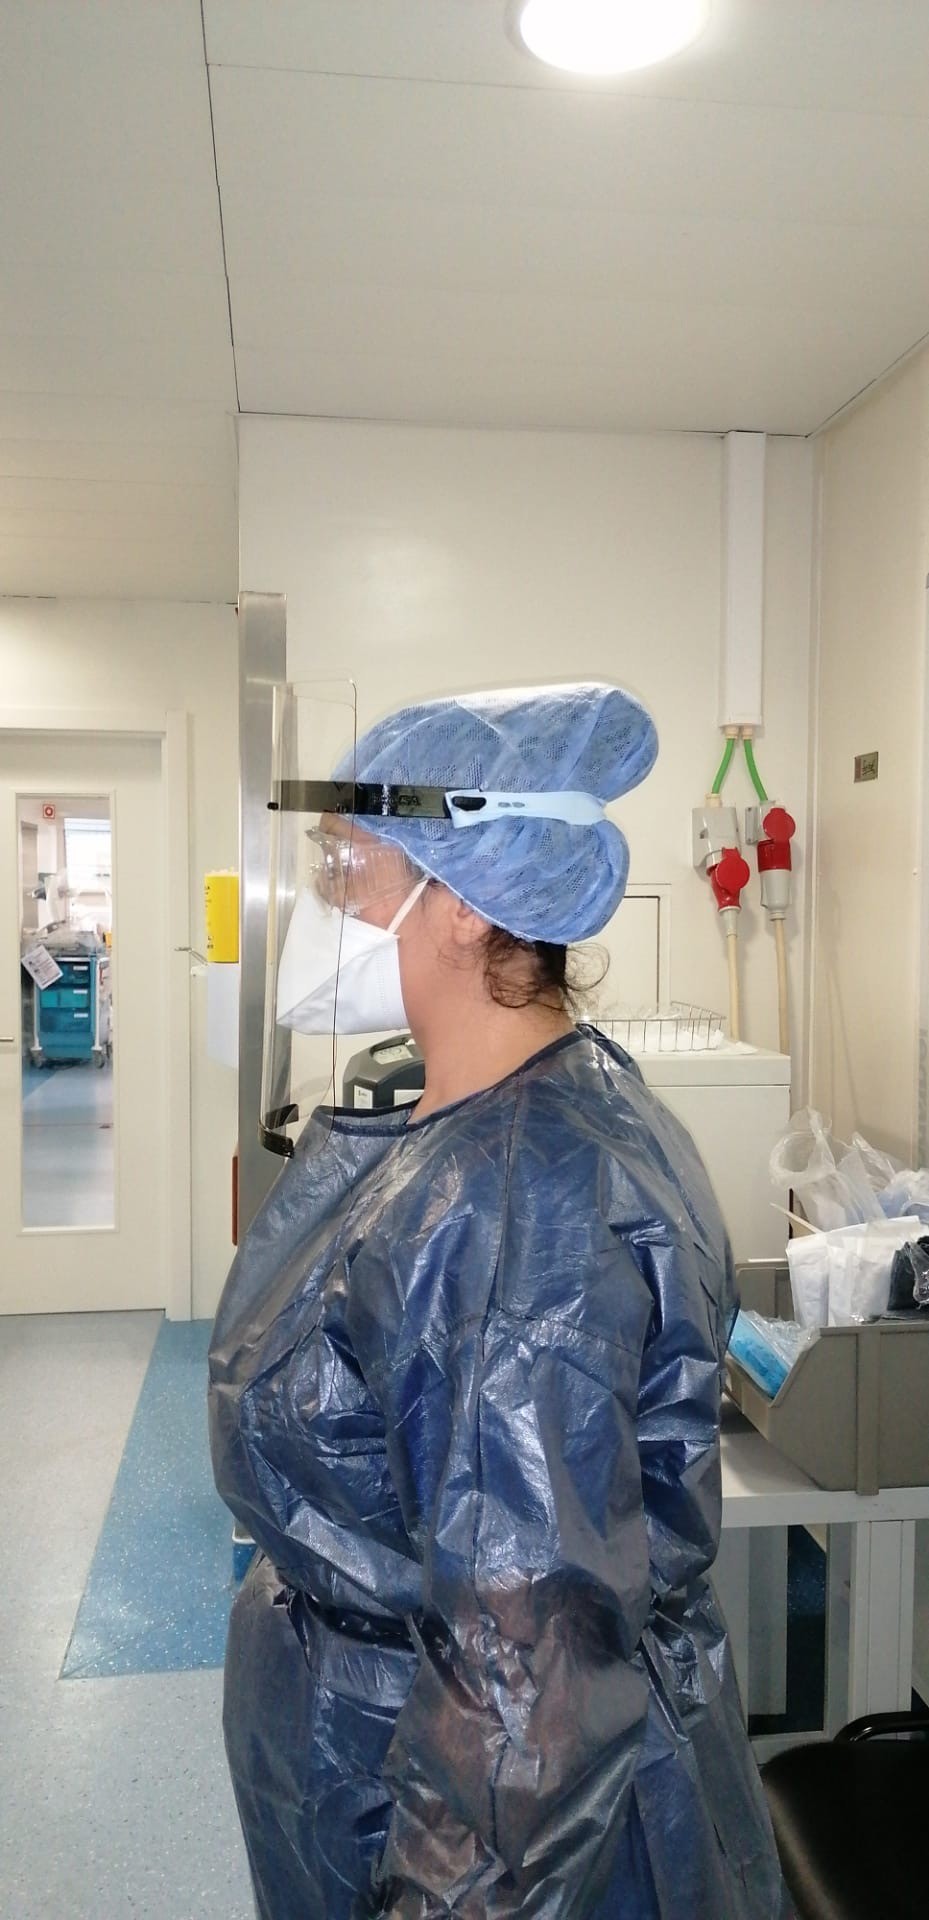 mulher com viseira (máscara) de perfil em ambiente hospitalar